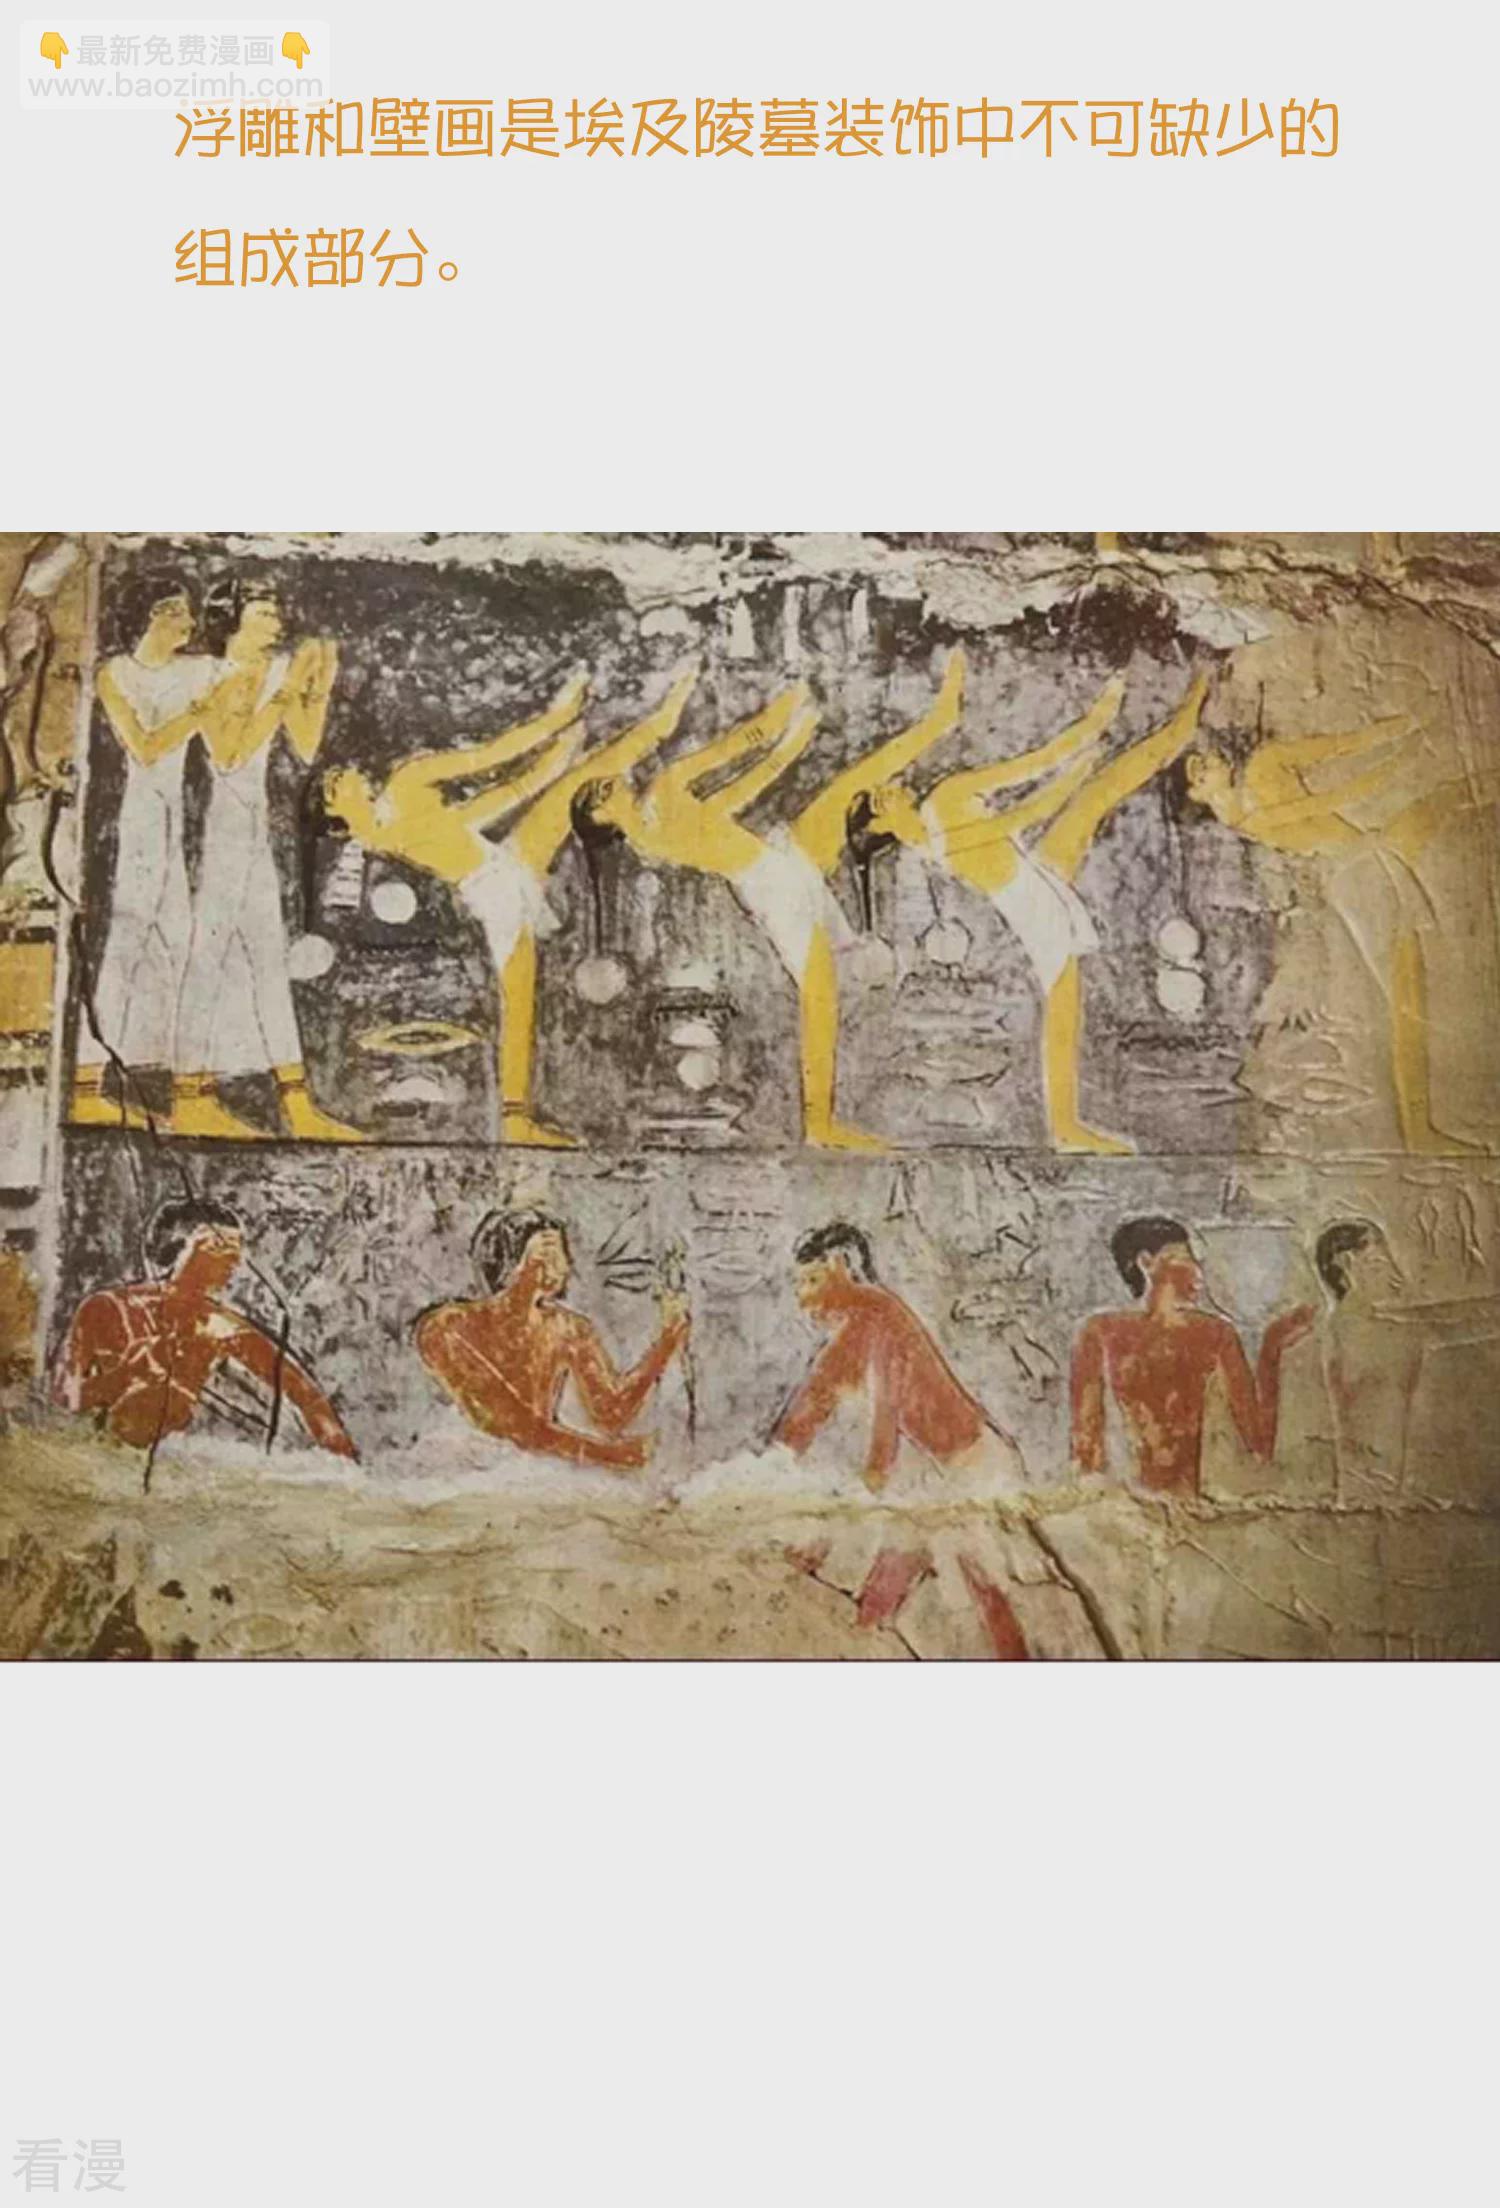 王的第一宠后 - 王的茶话会37 古埃及的壁画文化 - 1